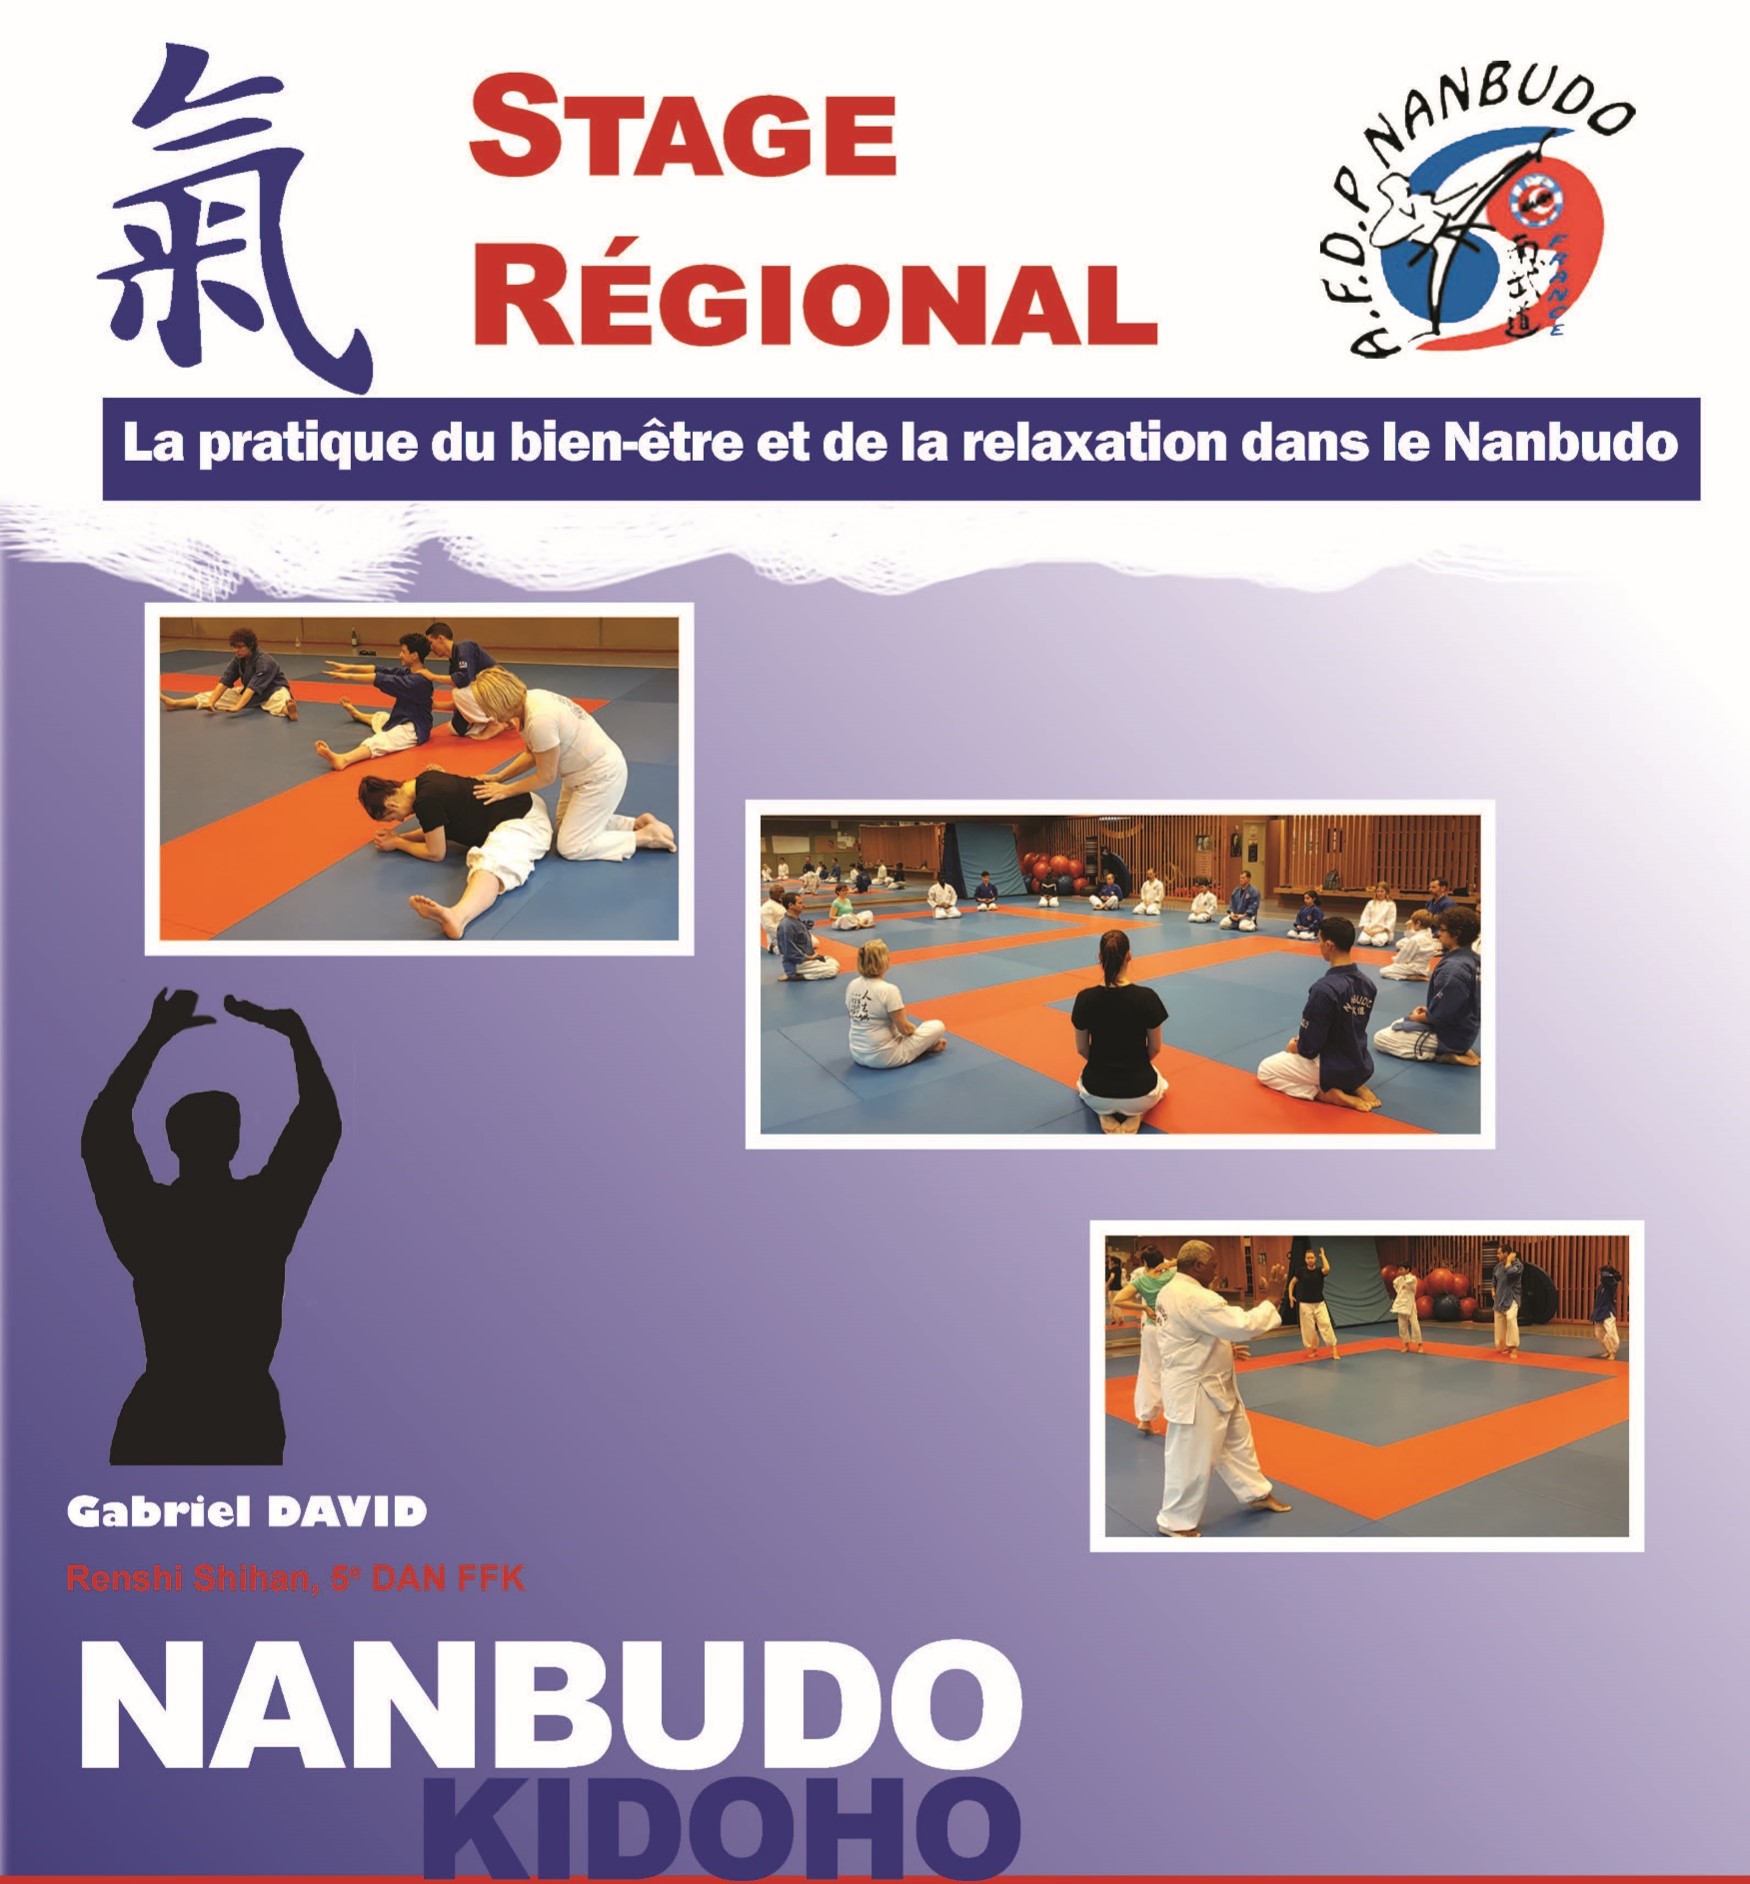 Stage Regional IdF - Kidoho